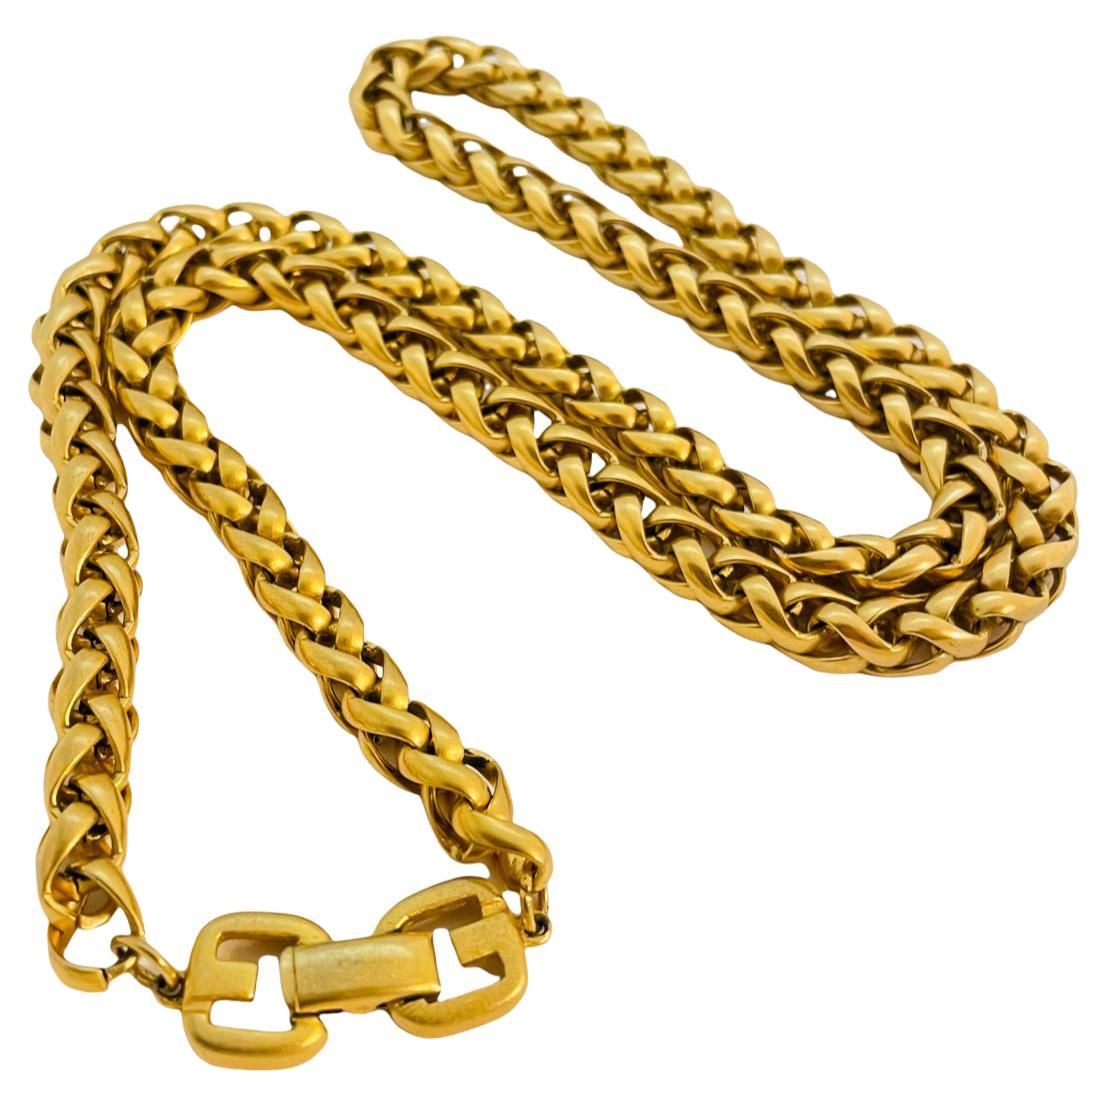 Collier vintage GIVENCHY G logo en chaîne dorée pour défilé de mode